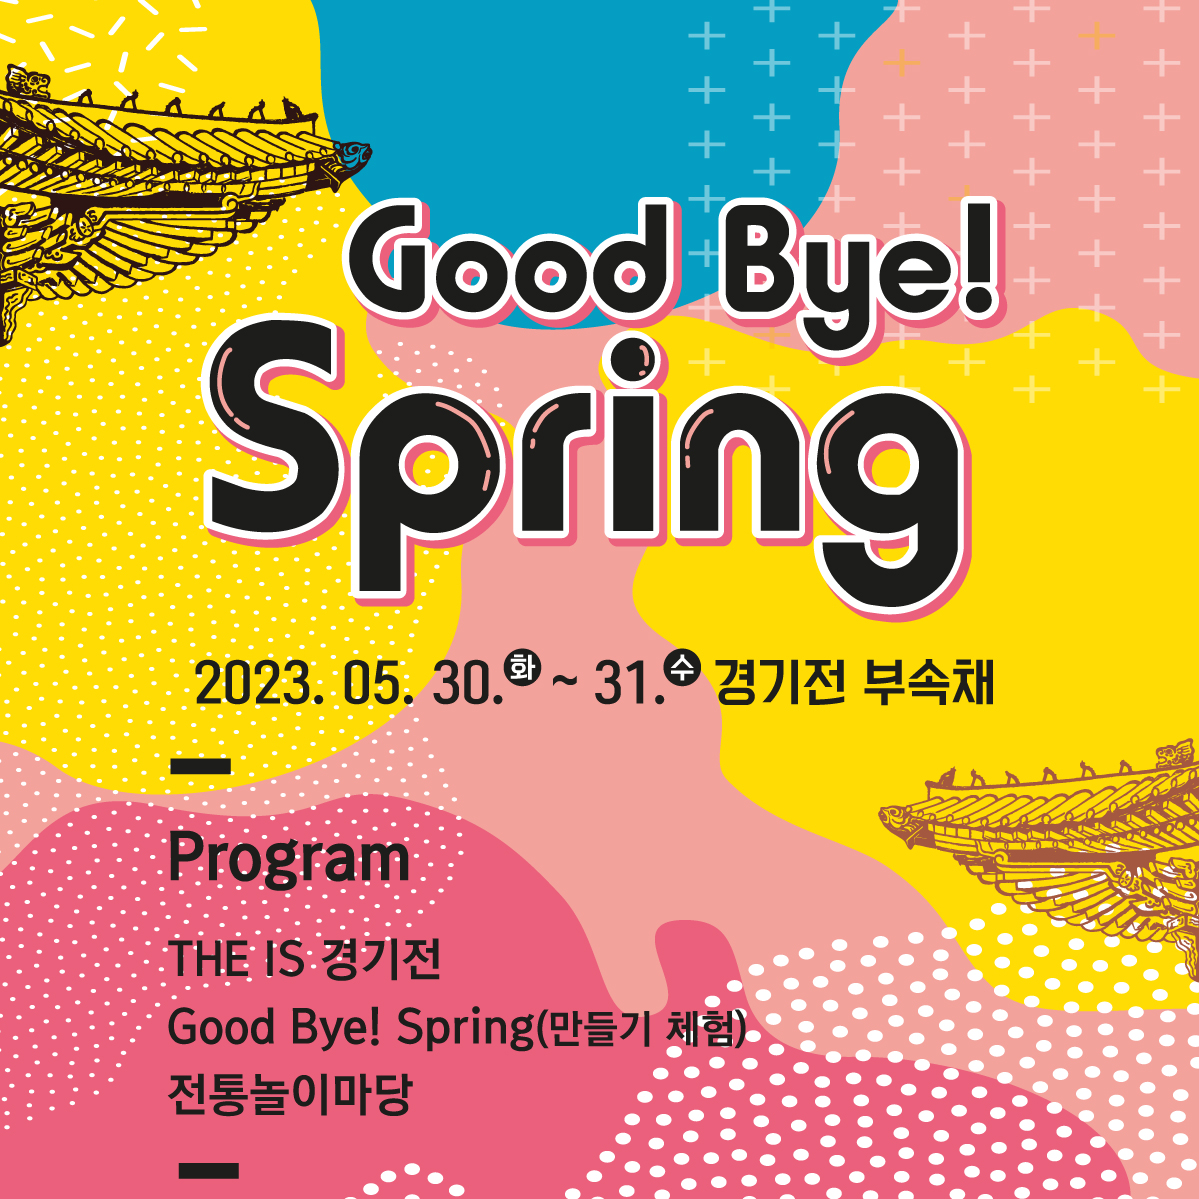 [5월 문화행사] Good bye! spring 썸네일